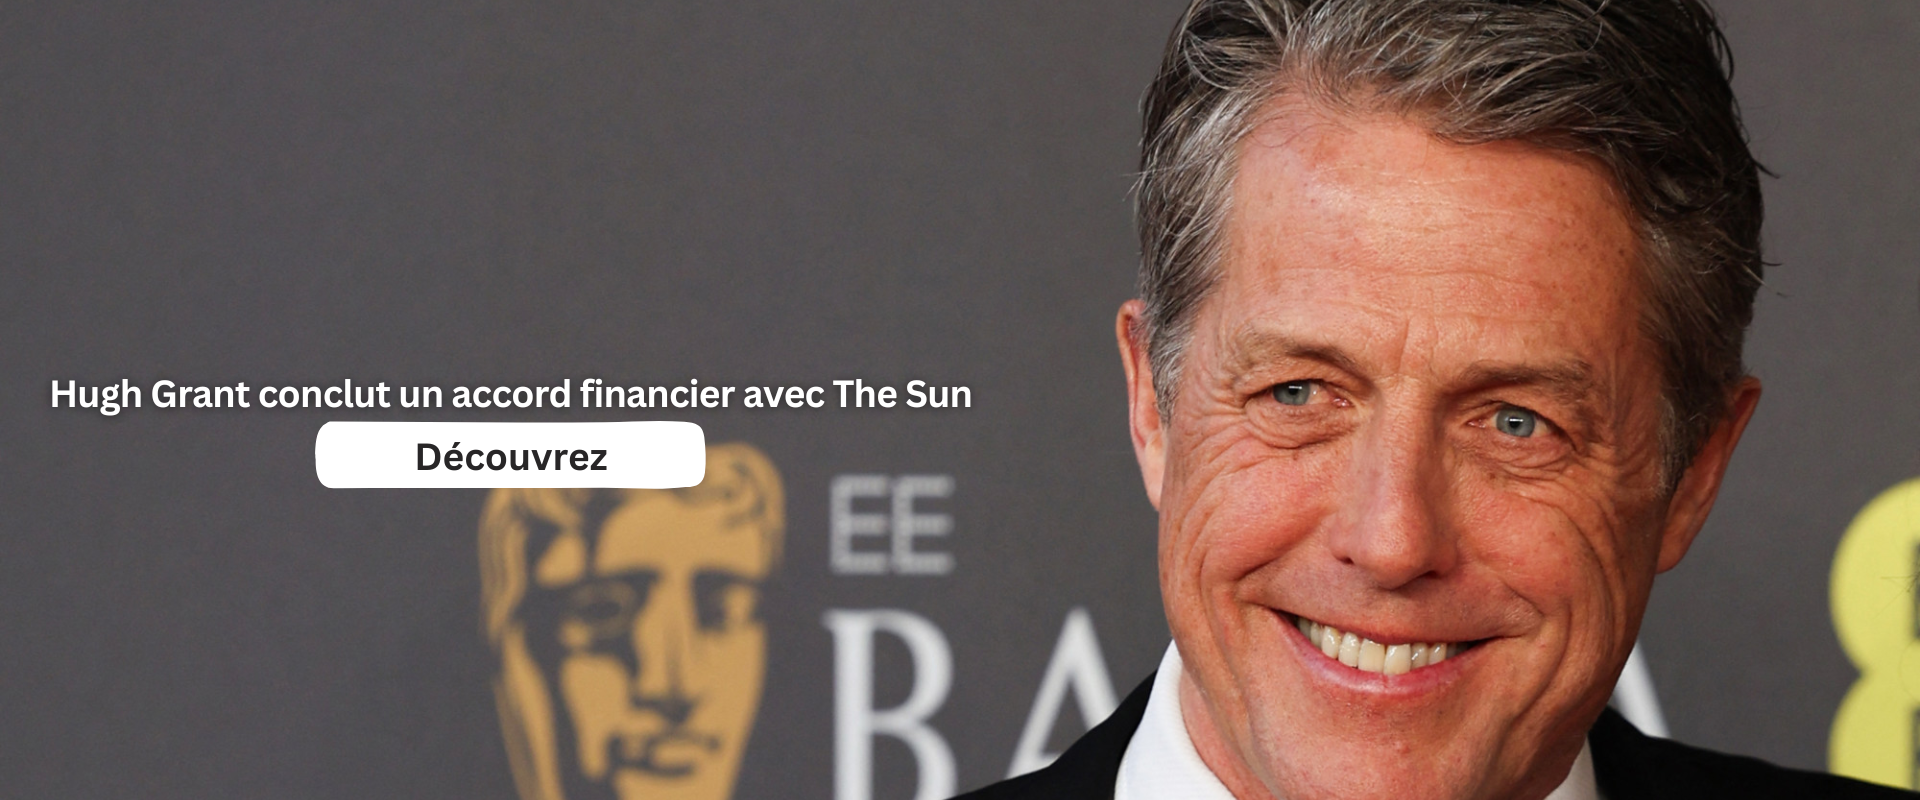 Hugh Grant conclut un accord financier avec The Sun